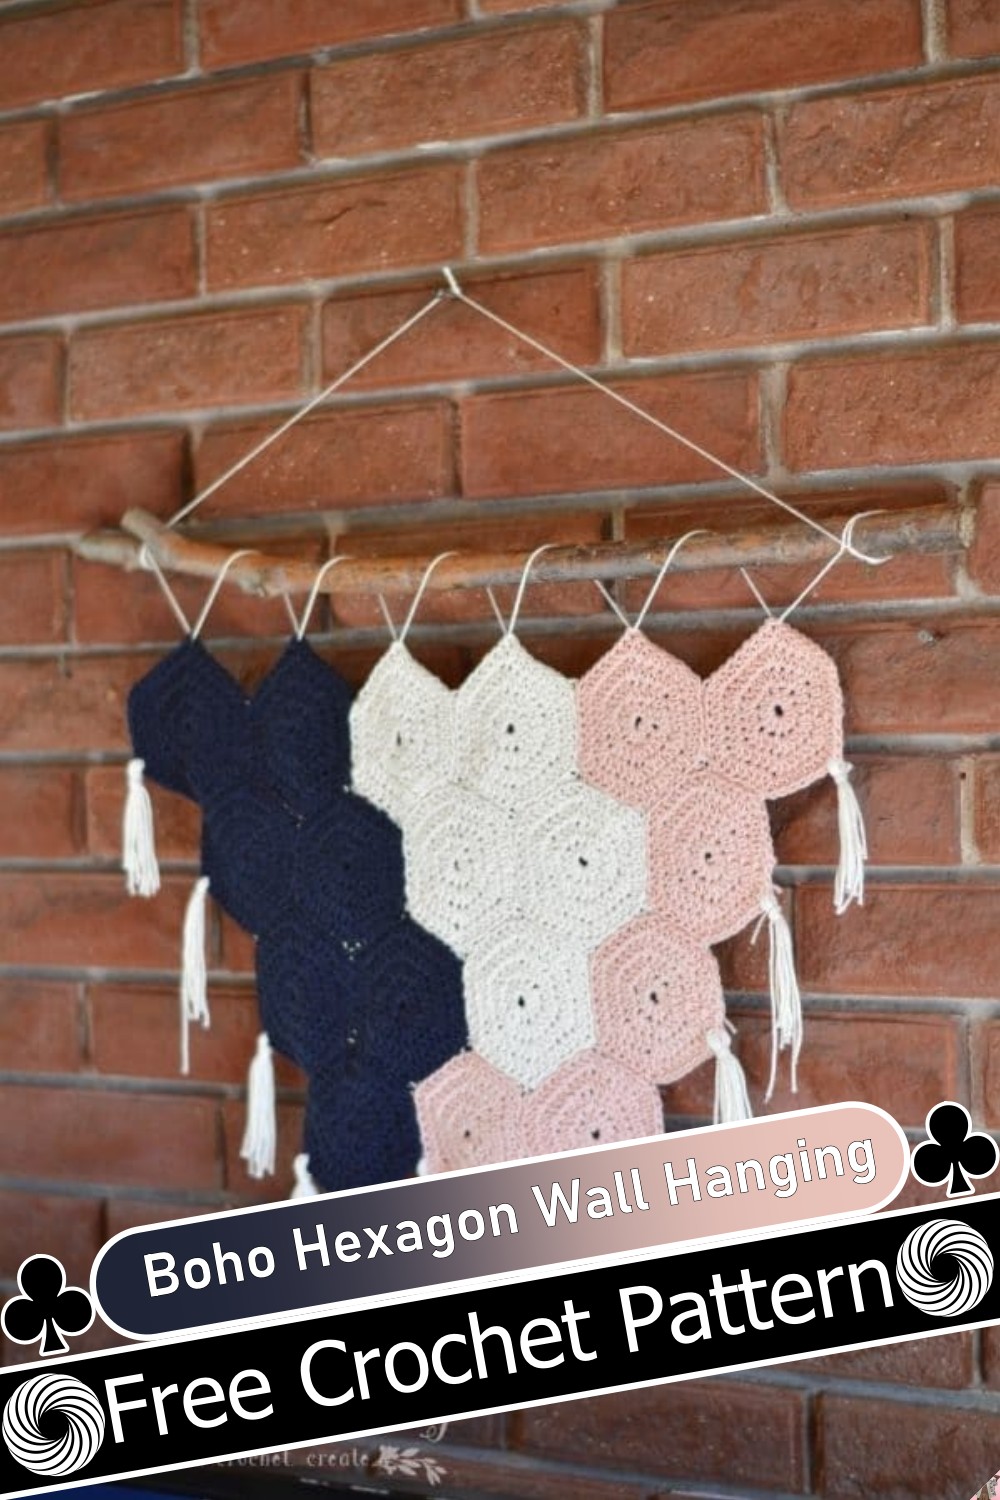 Boho Hexagon Wall Hanging